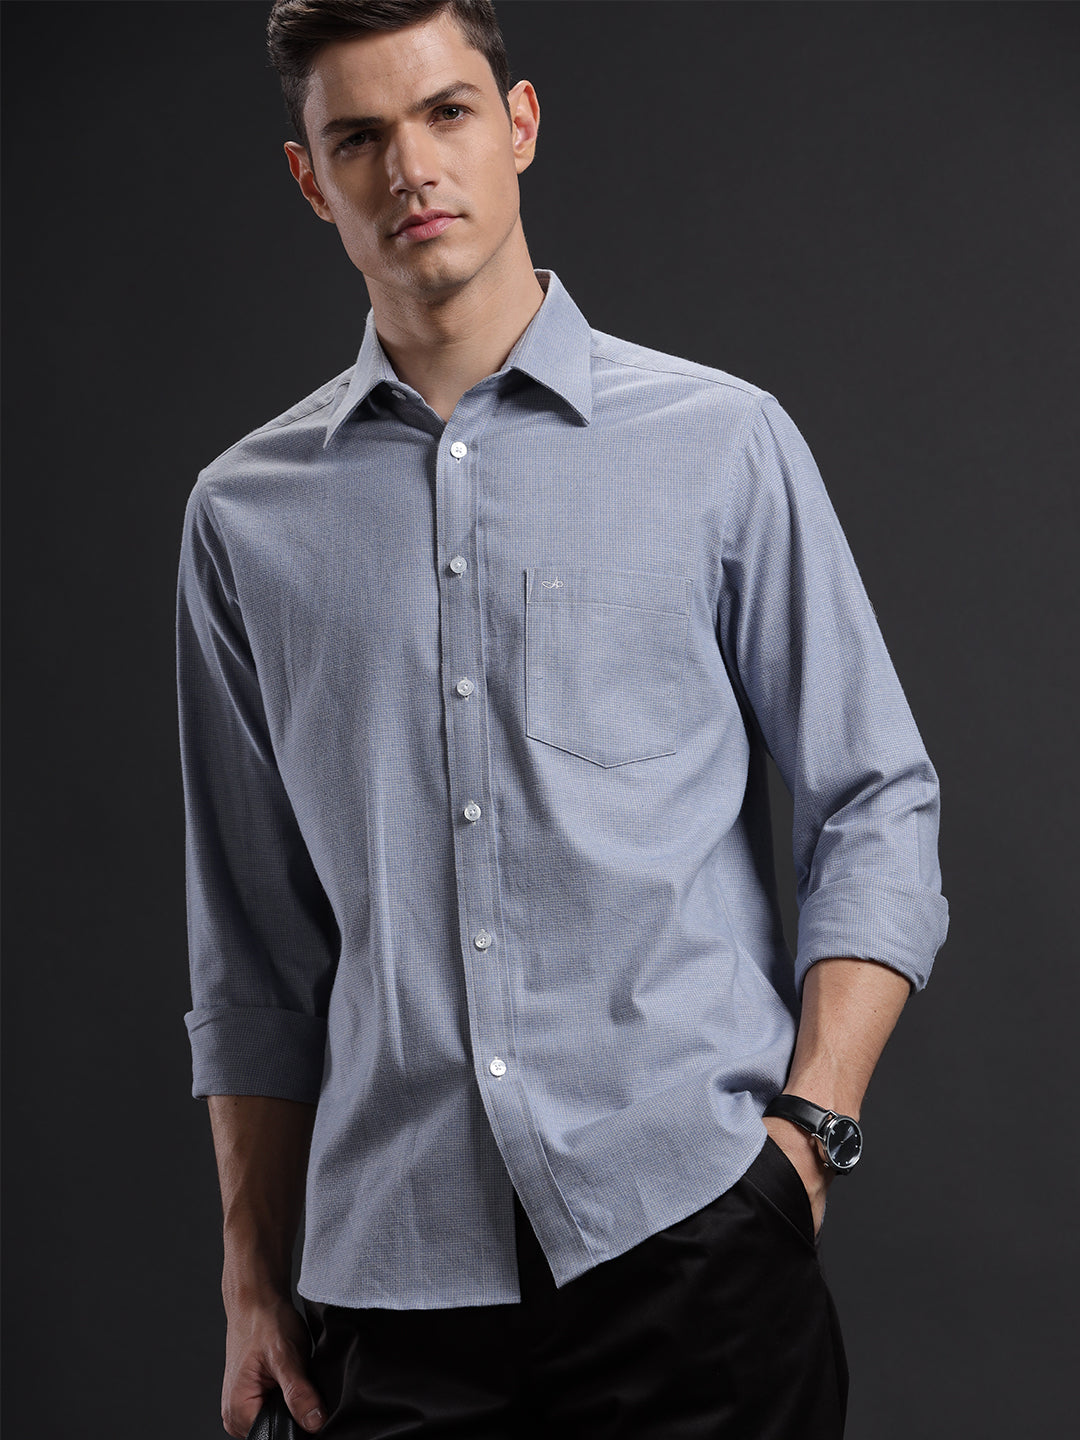 Aldeno Mens Regular Fit Check Blue/Grey Casual Cotton Shirt (CIAR)